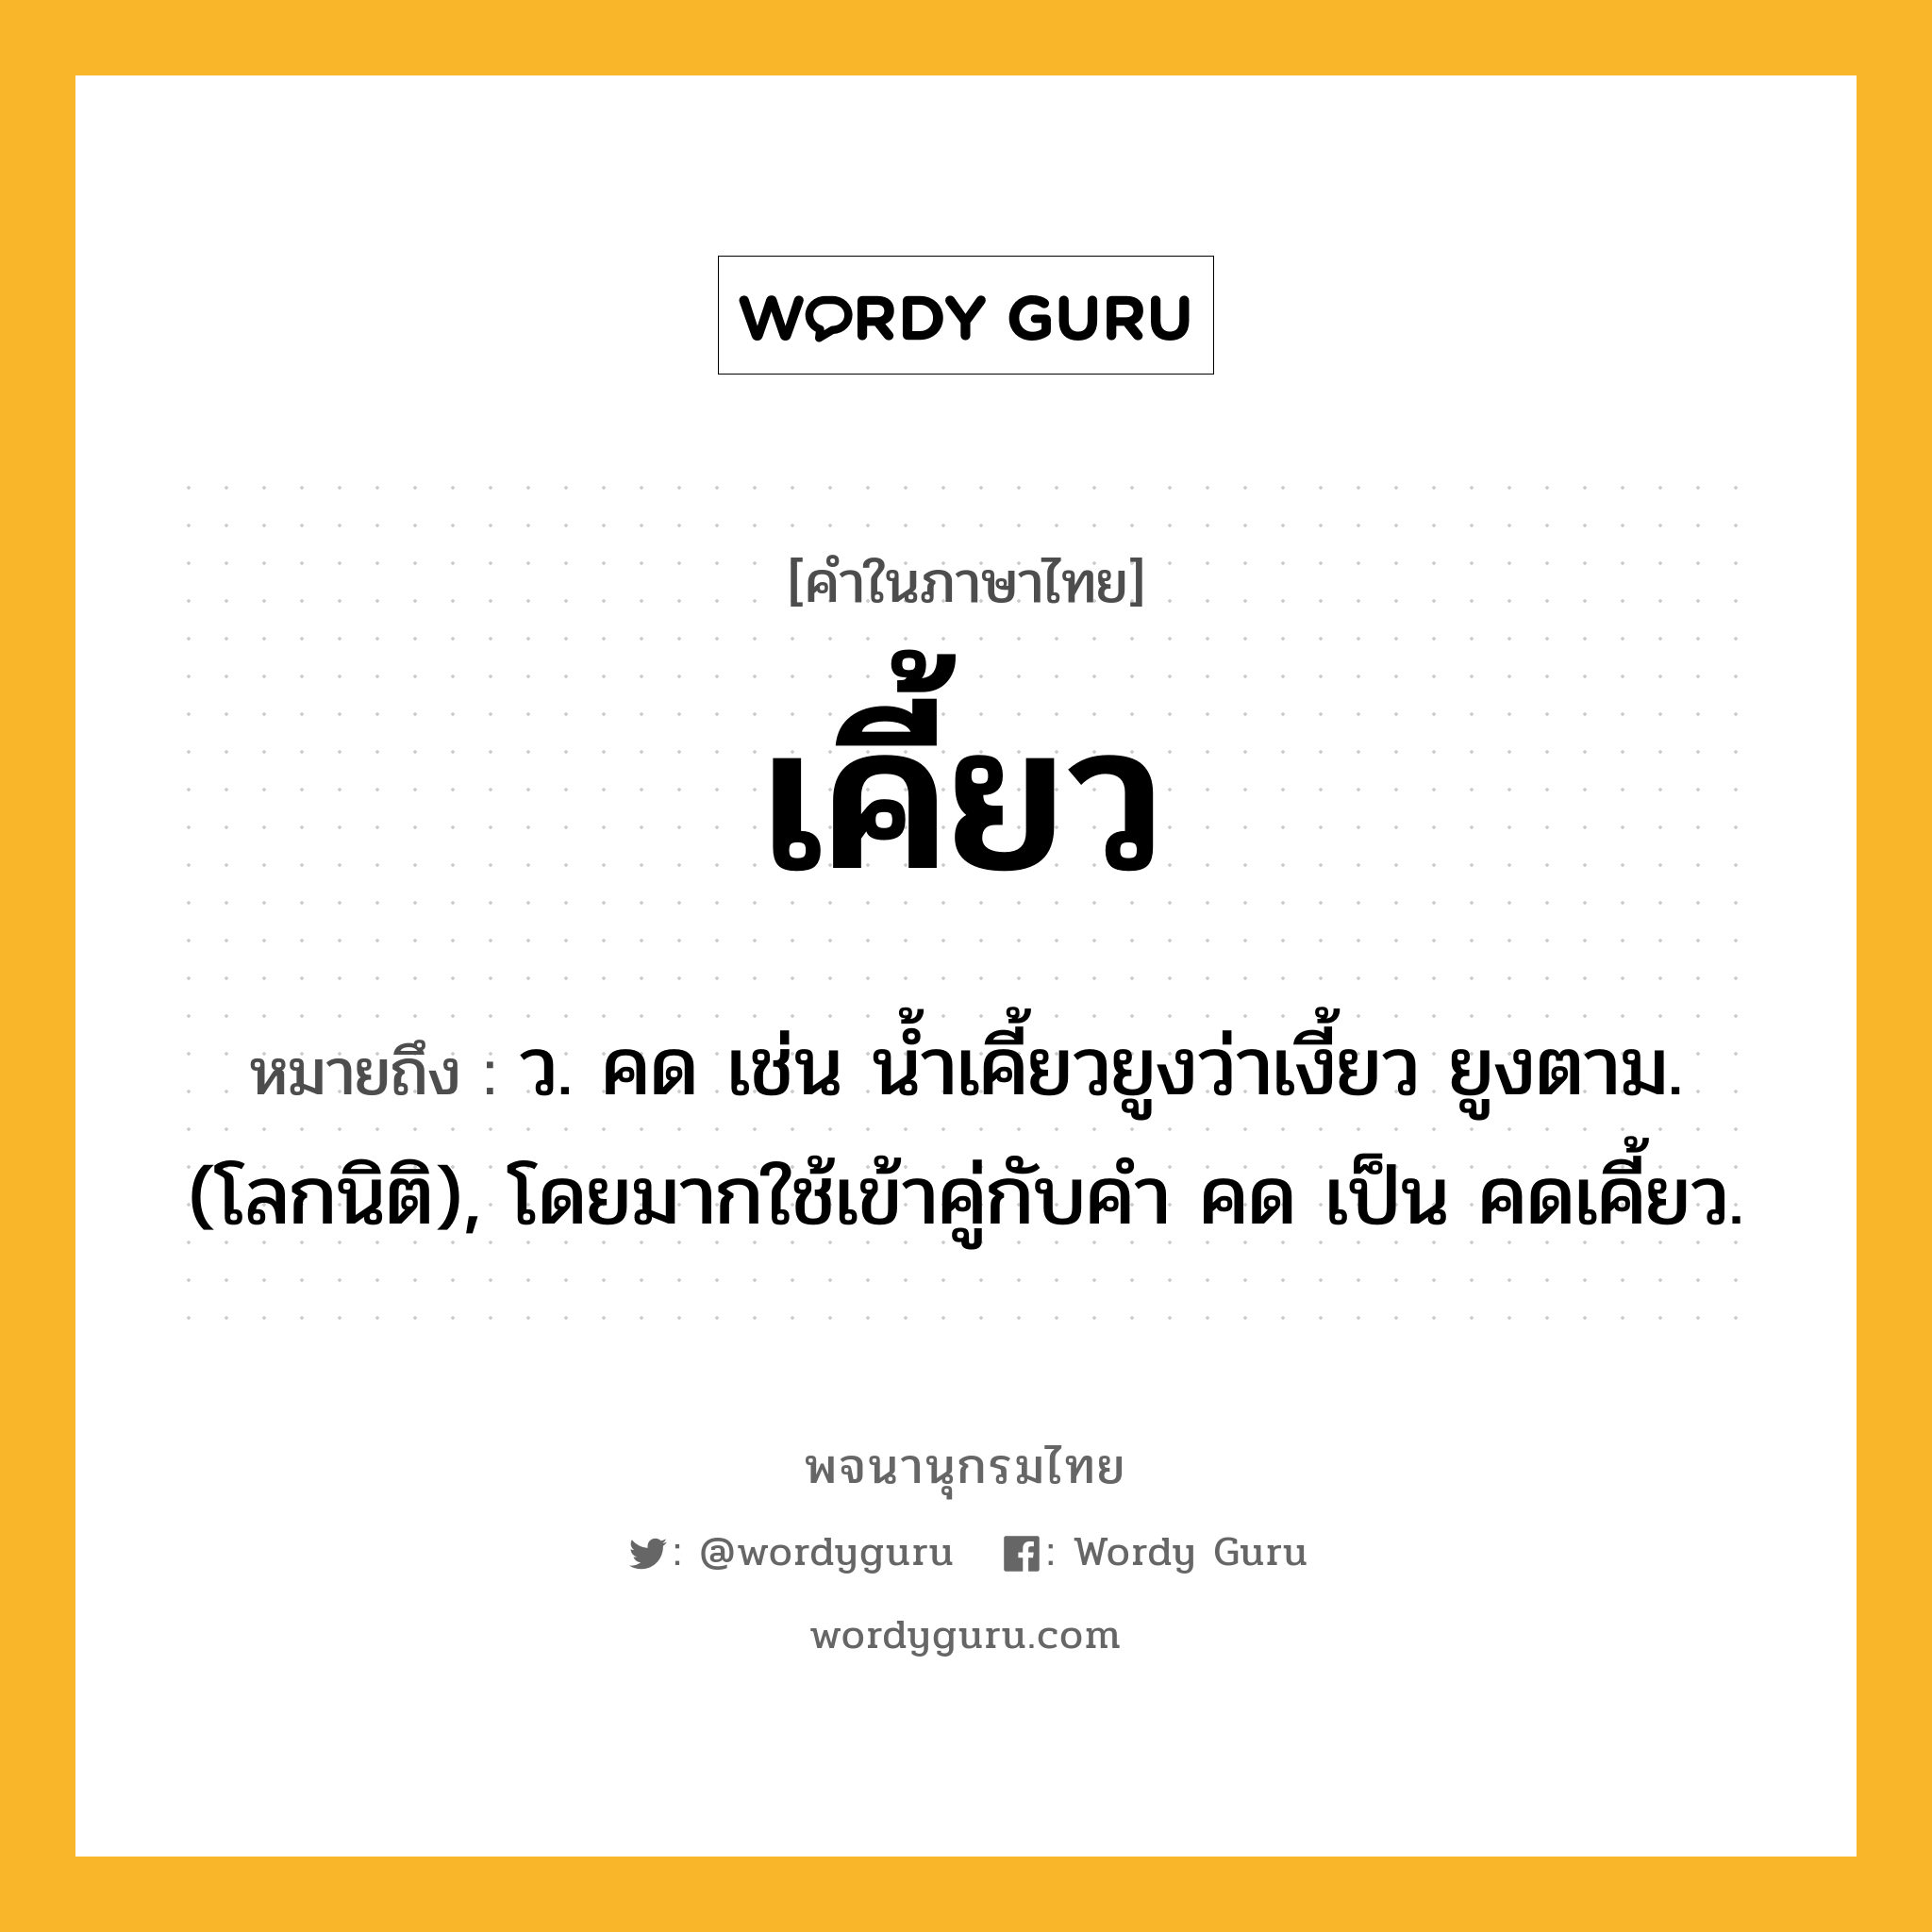 เคี้ยว ความหมาย หมายถึงอะไร?, คำในภาษาไทย เคี้ยว หมายถึง ว. คด เช่น นํ้าเคี้ยวยูงว่าเงี้ยว ยูงตาม. (โลกนิติ), โดยมากใช้เข้าคู่กับคํา คด เป็น คดเคี้ยว.